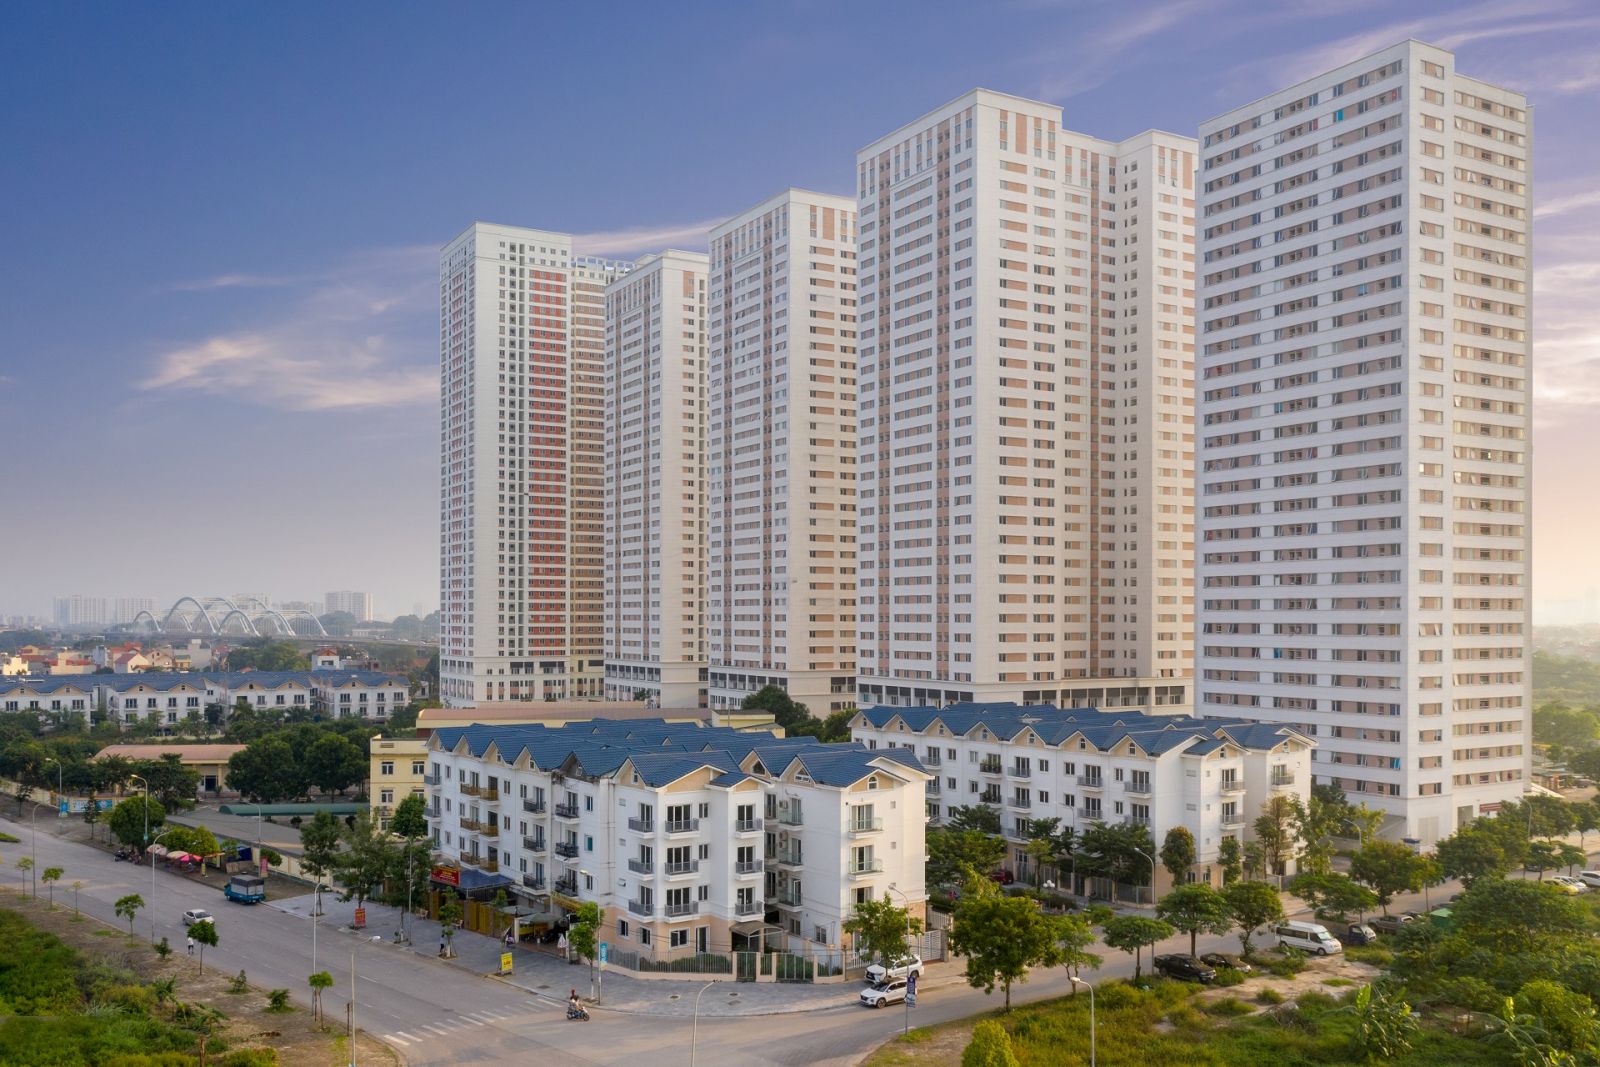 Lựa chọn nào cho người mua chung cư tại thủ đô trong tầm giá 2 tỷ đồng?